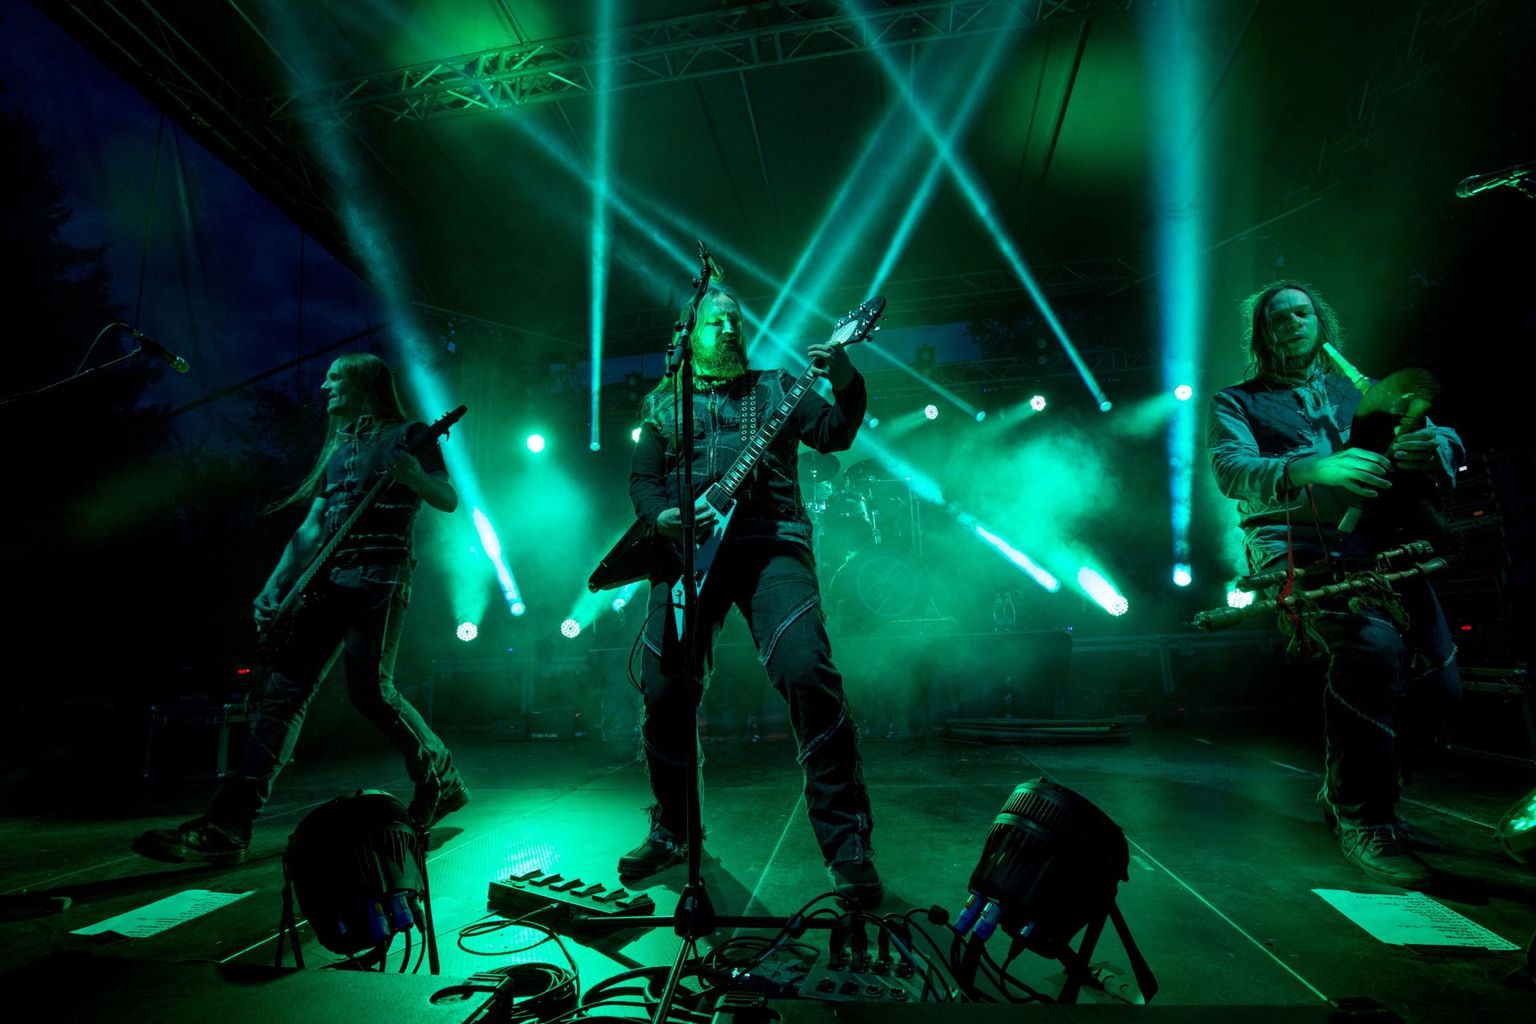 Möödunud aastal ka Viljandi pärimusmuusika festivalil üles astunud Metsatöll on oma metalse muusika üles keevitanud rahvuslikule vundamendile.